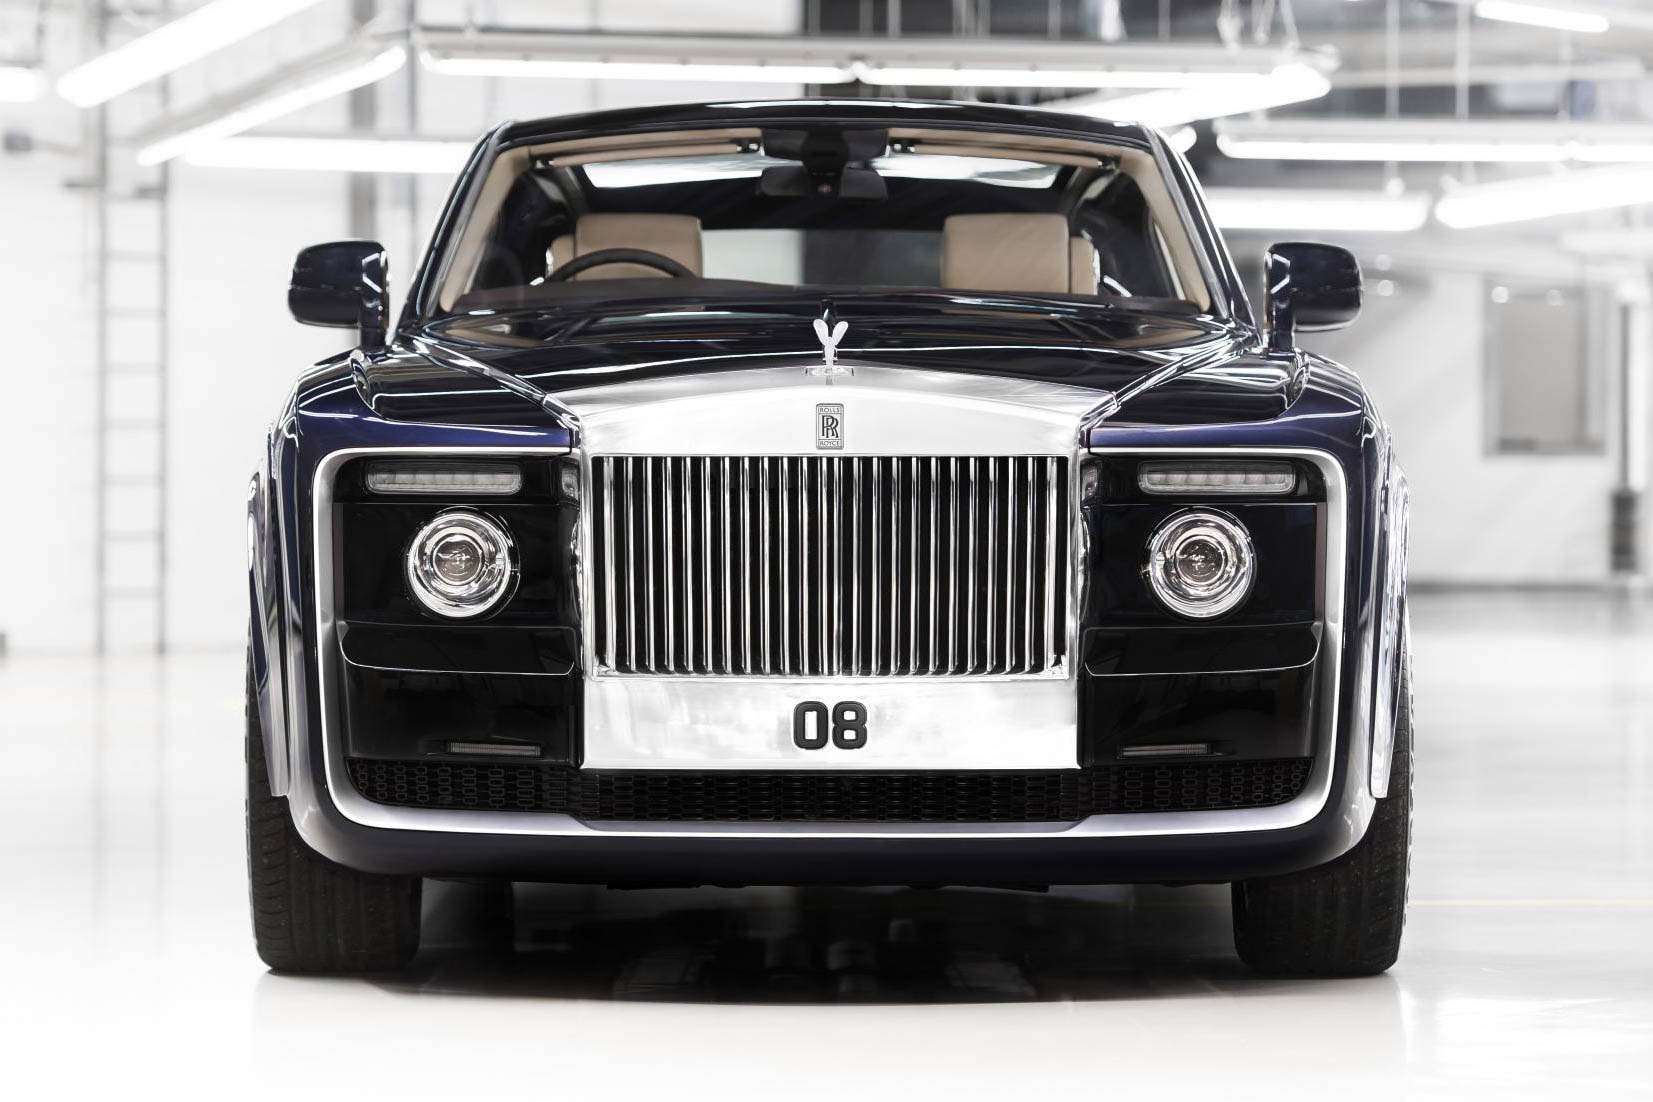 ロールス・ロイス Rolls-Royce が史上最も高級な自動車 Sweptail を発表